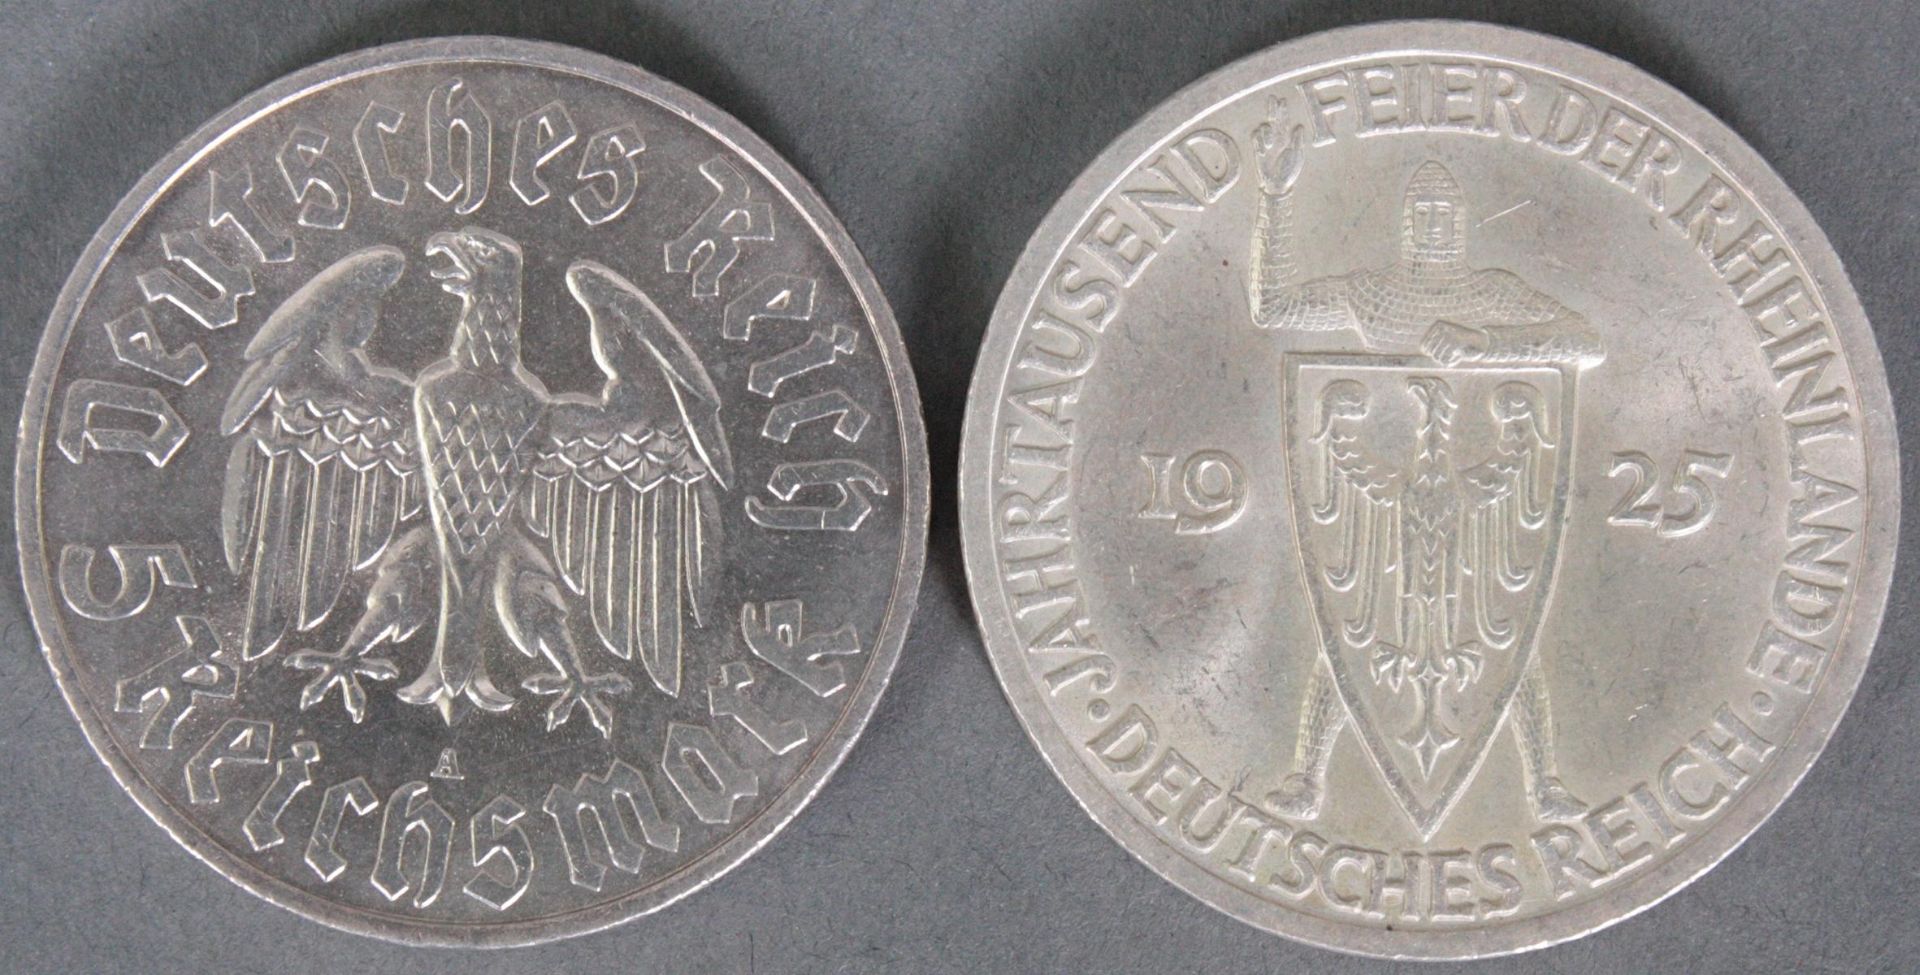 3 Reichsmark 1925 Rheinlande und 5 Reichsmark Martin Luther 1933 - Image 2 of 2